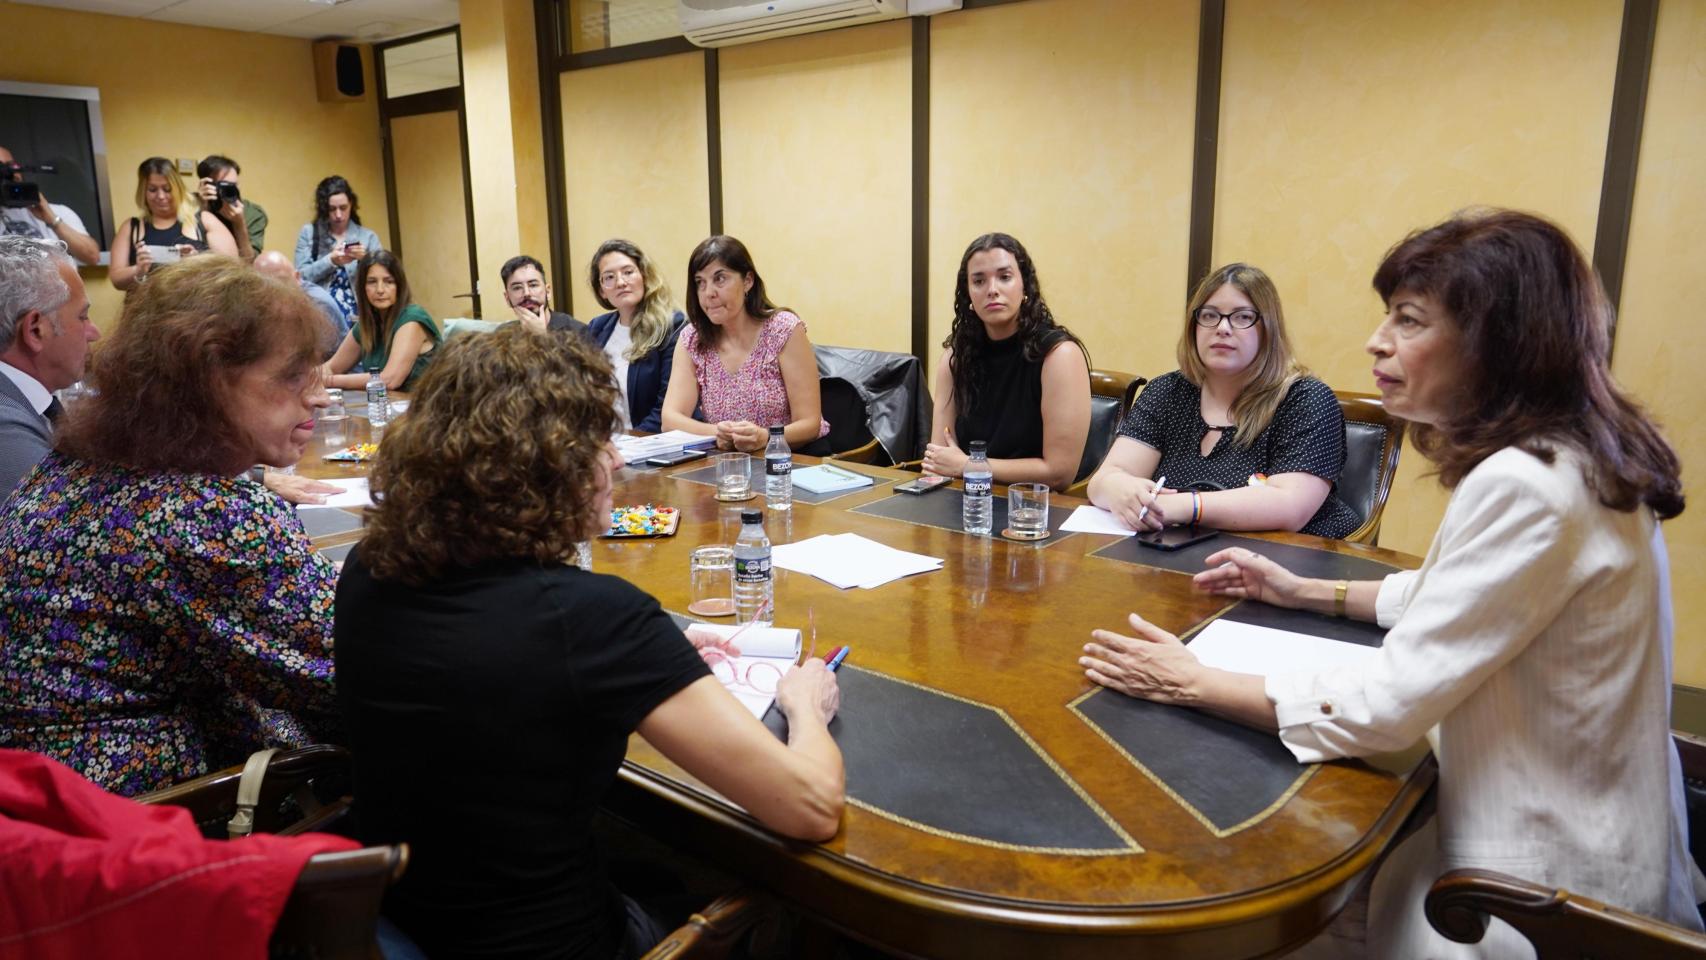 La ministra Ana Redondo se reúne con miembros del colectivo LGTBI